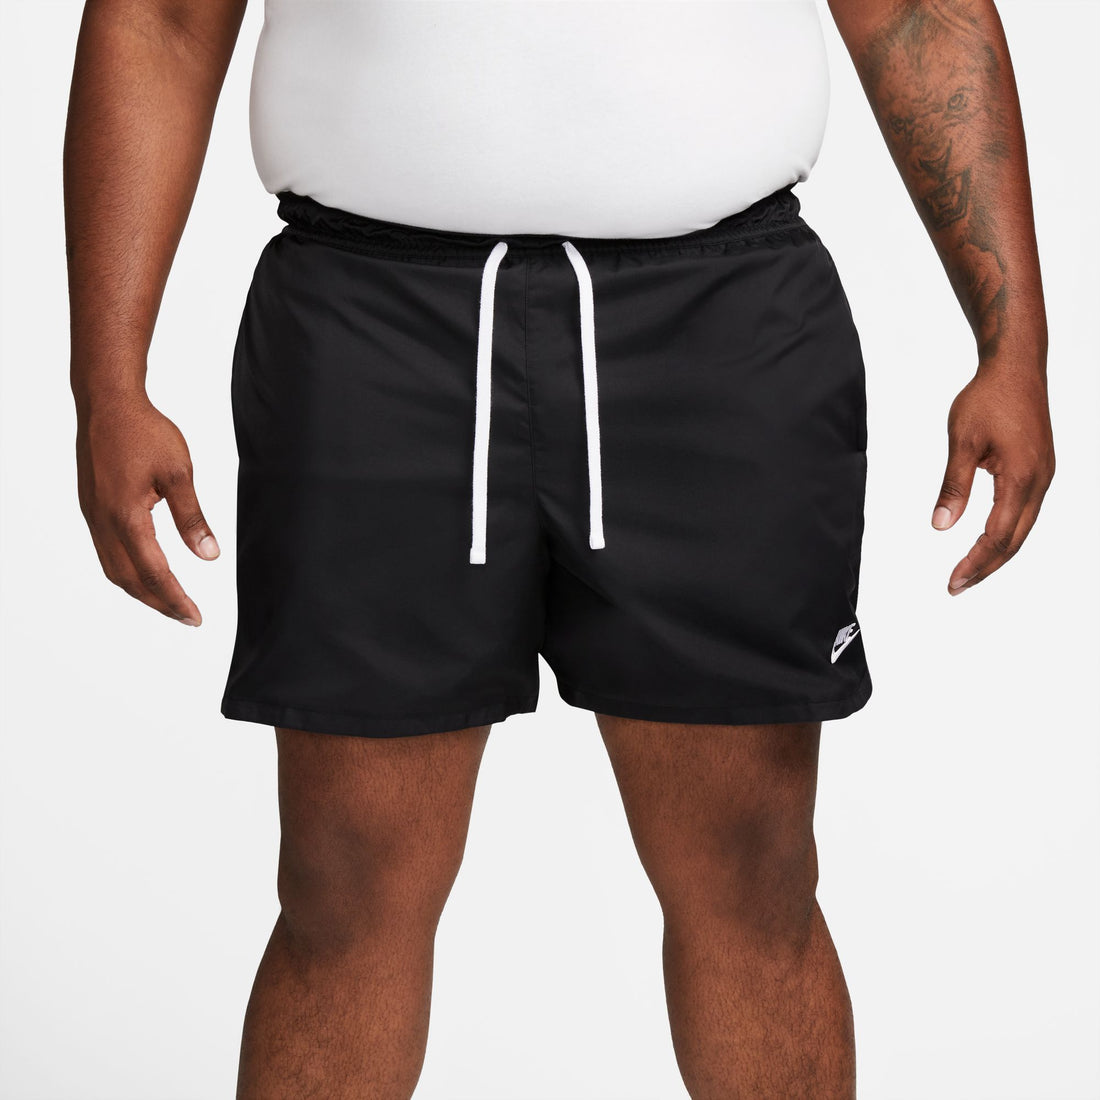 Nike Sportswear Men's Woven Flow Shorts. Nike PH